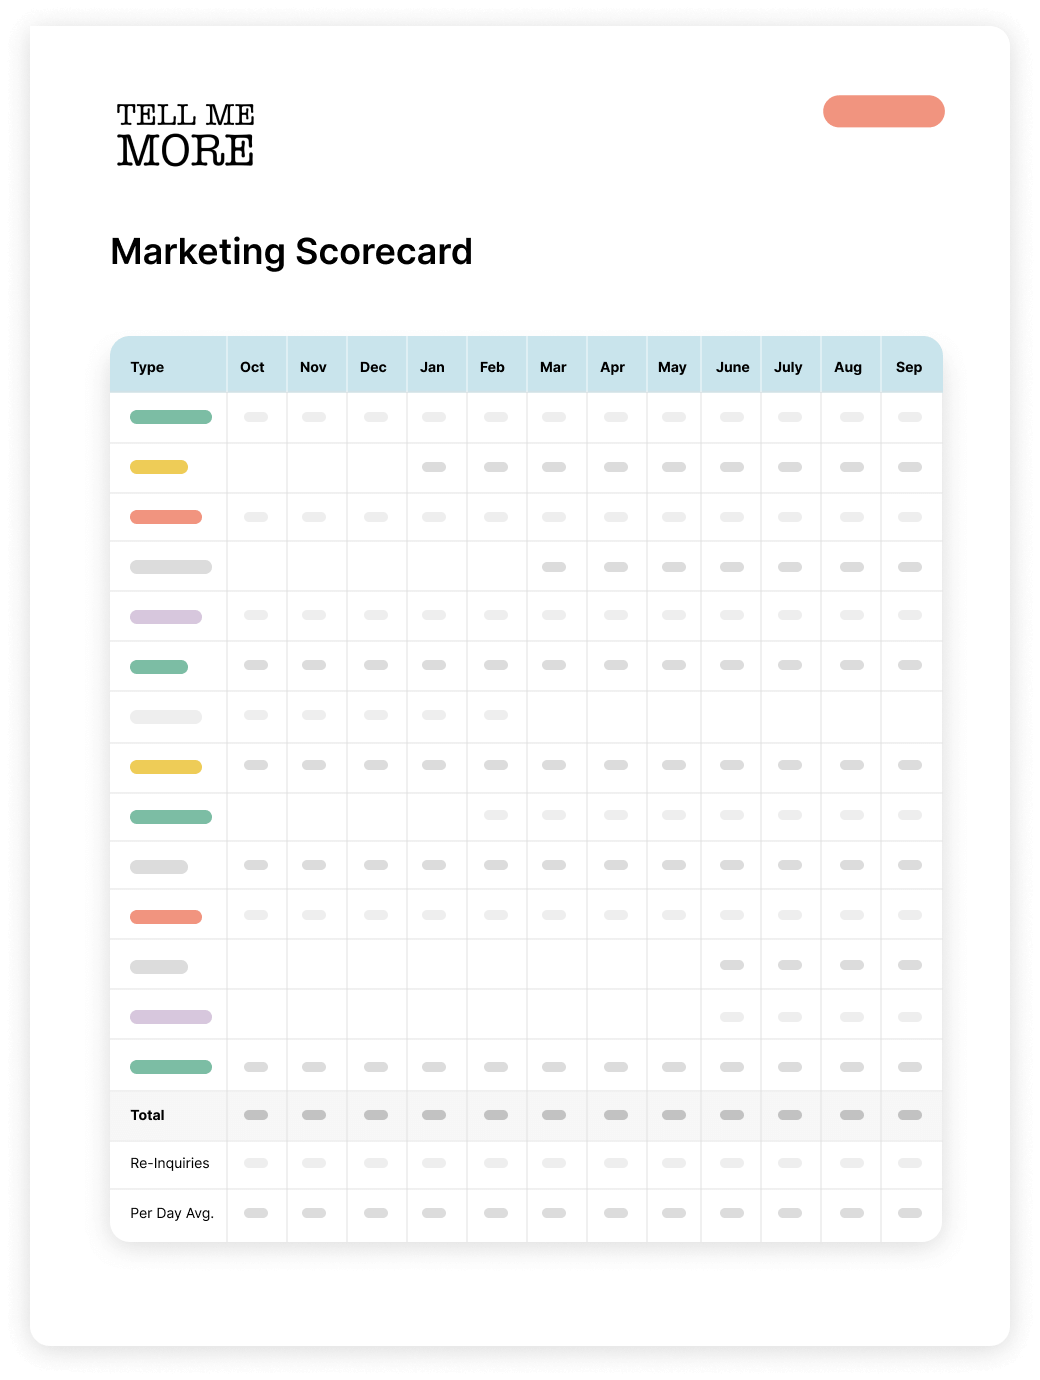 TMM marketing scorecard example illustration